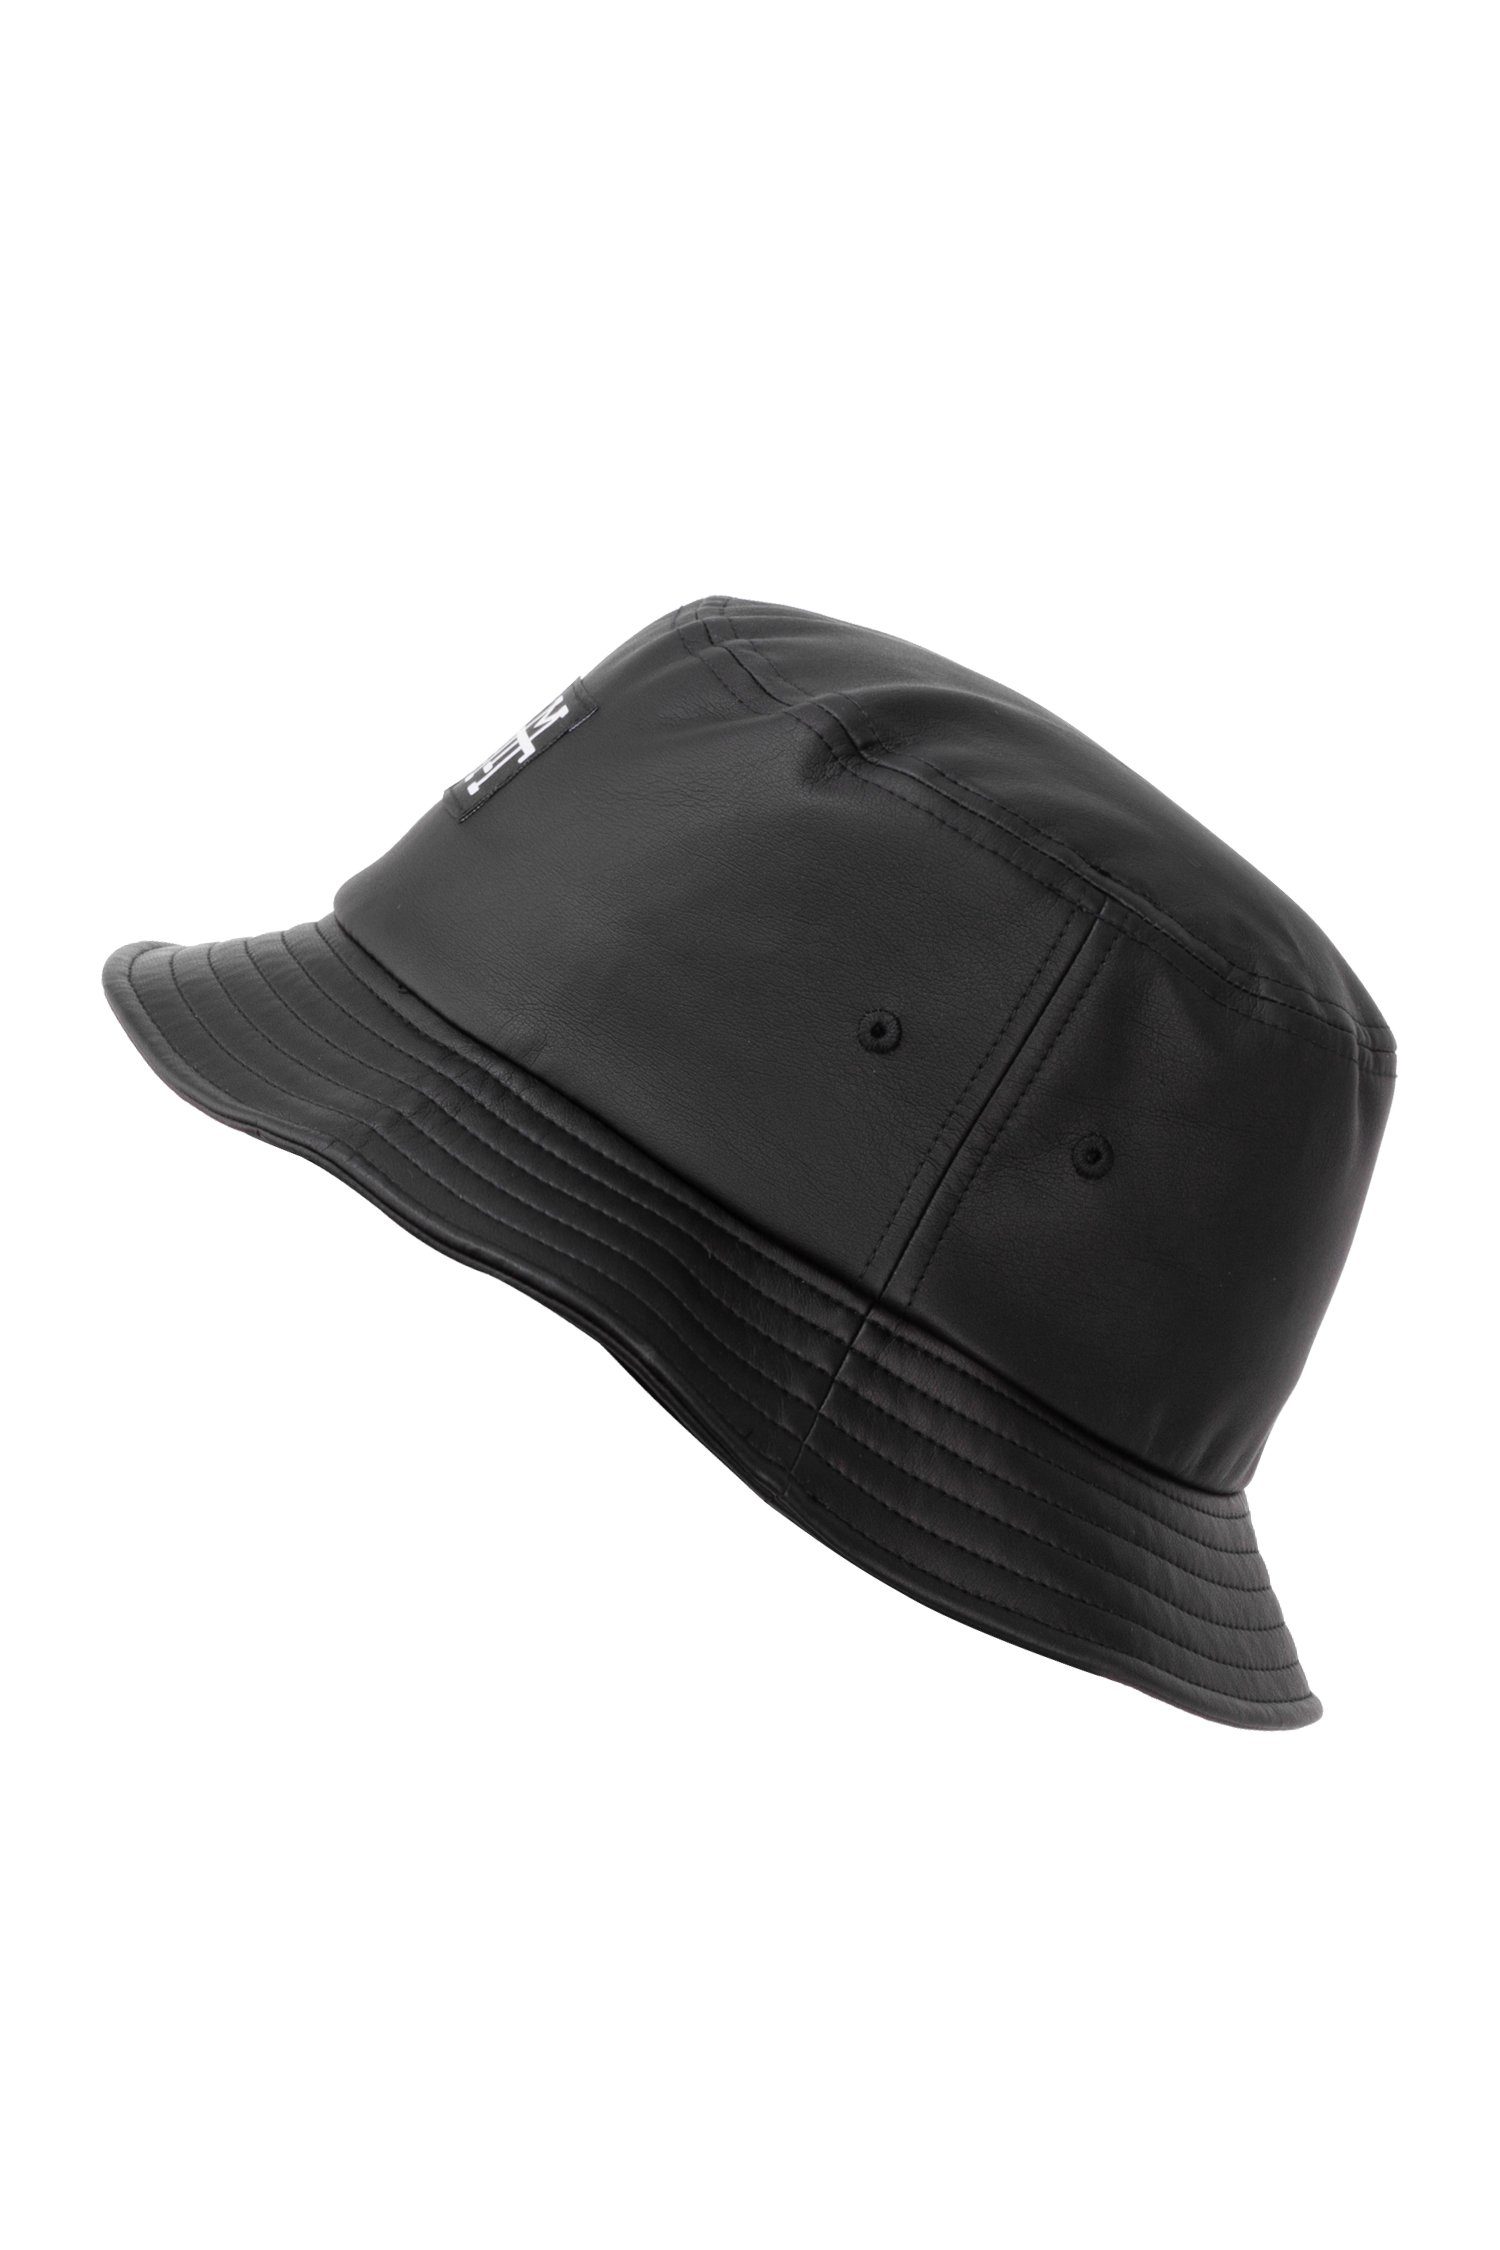 (Leather) Fischerhut Bucket 100% Fischermütze Hat, M13 Manufaktur13 - Vegan Anglerhut, Hat Out Session Black